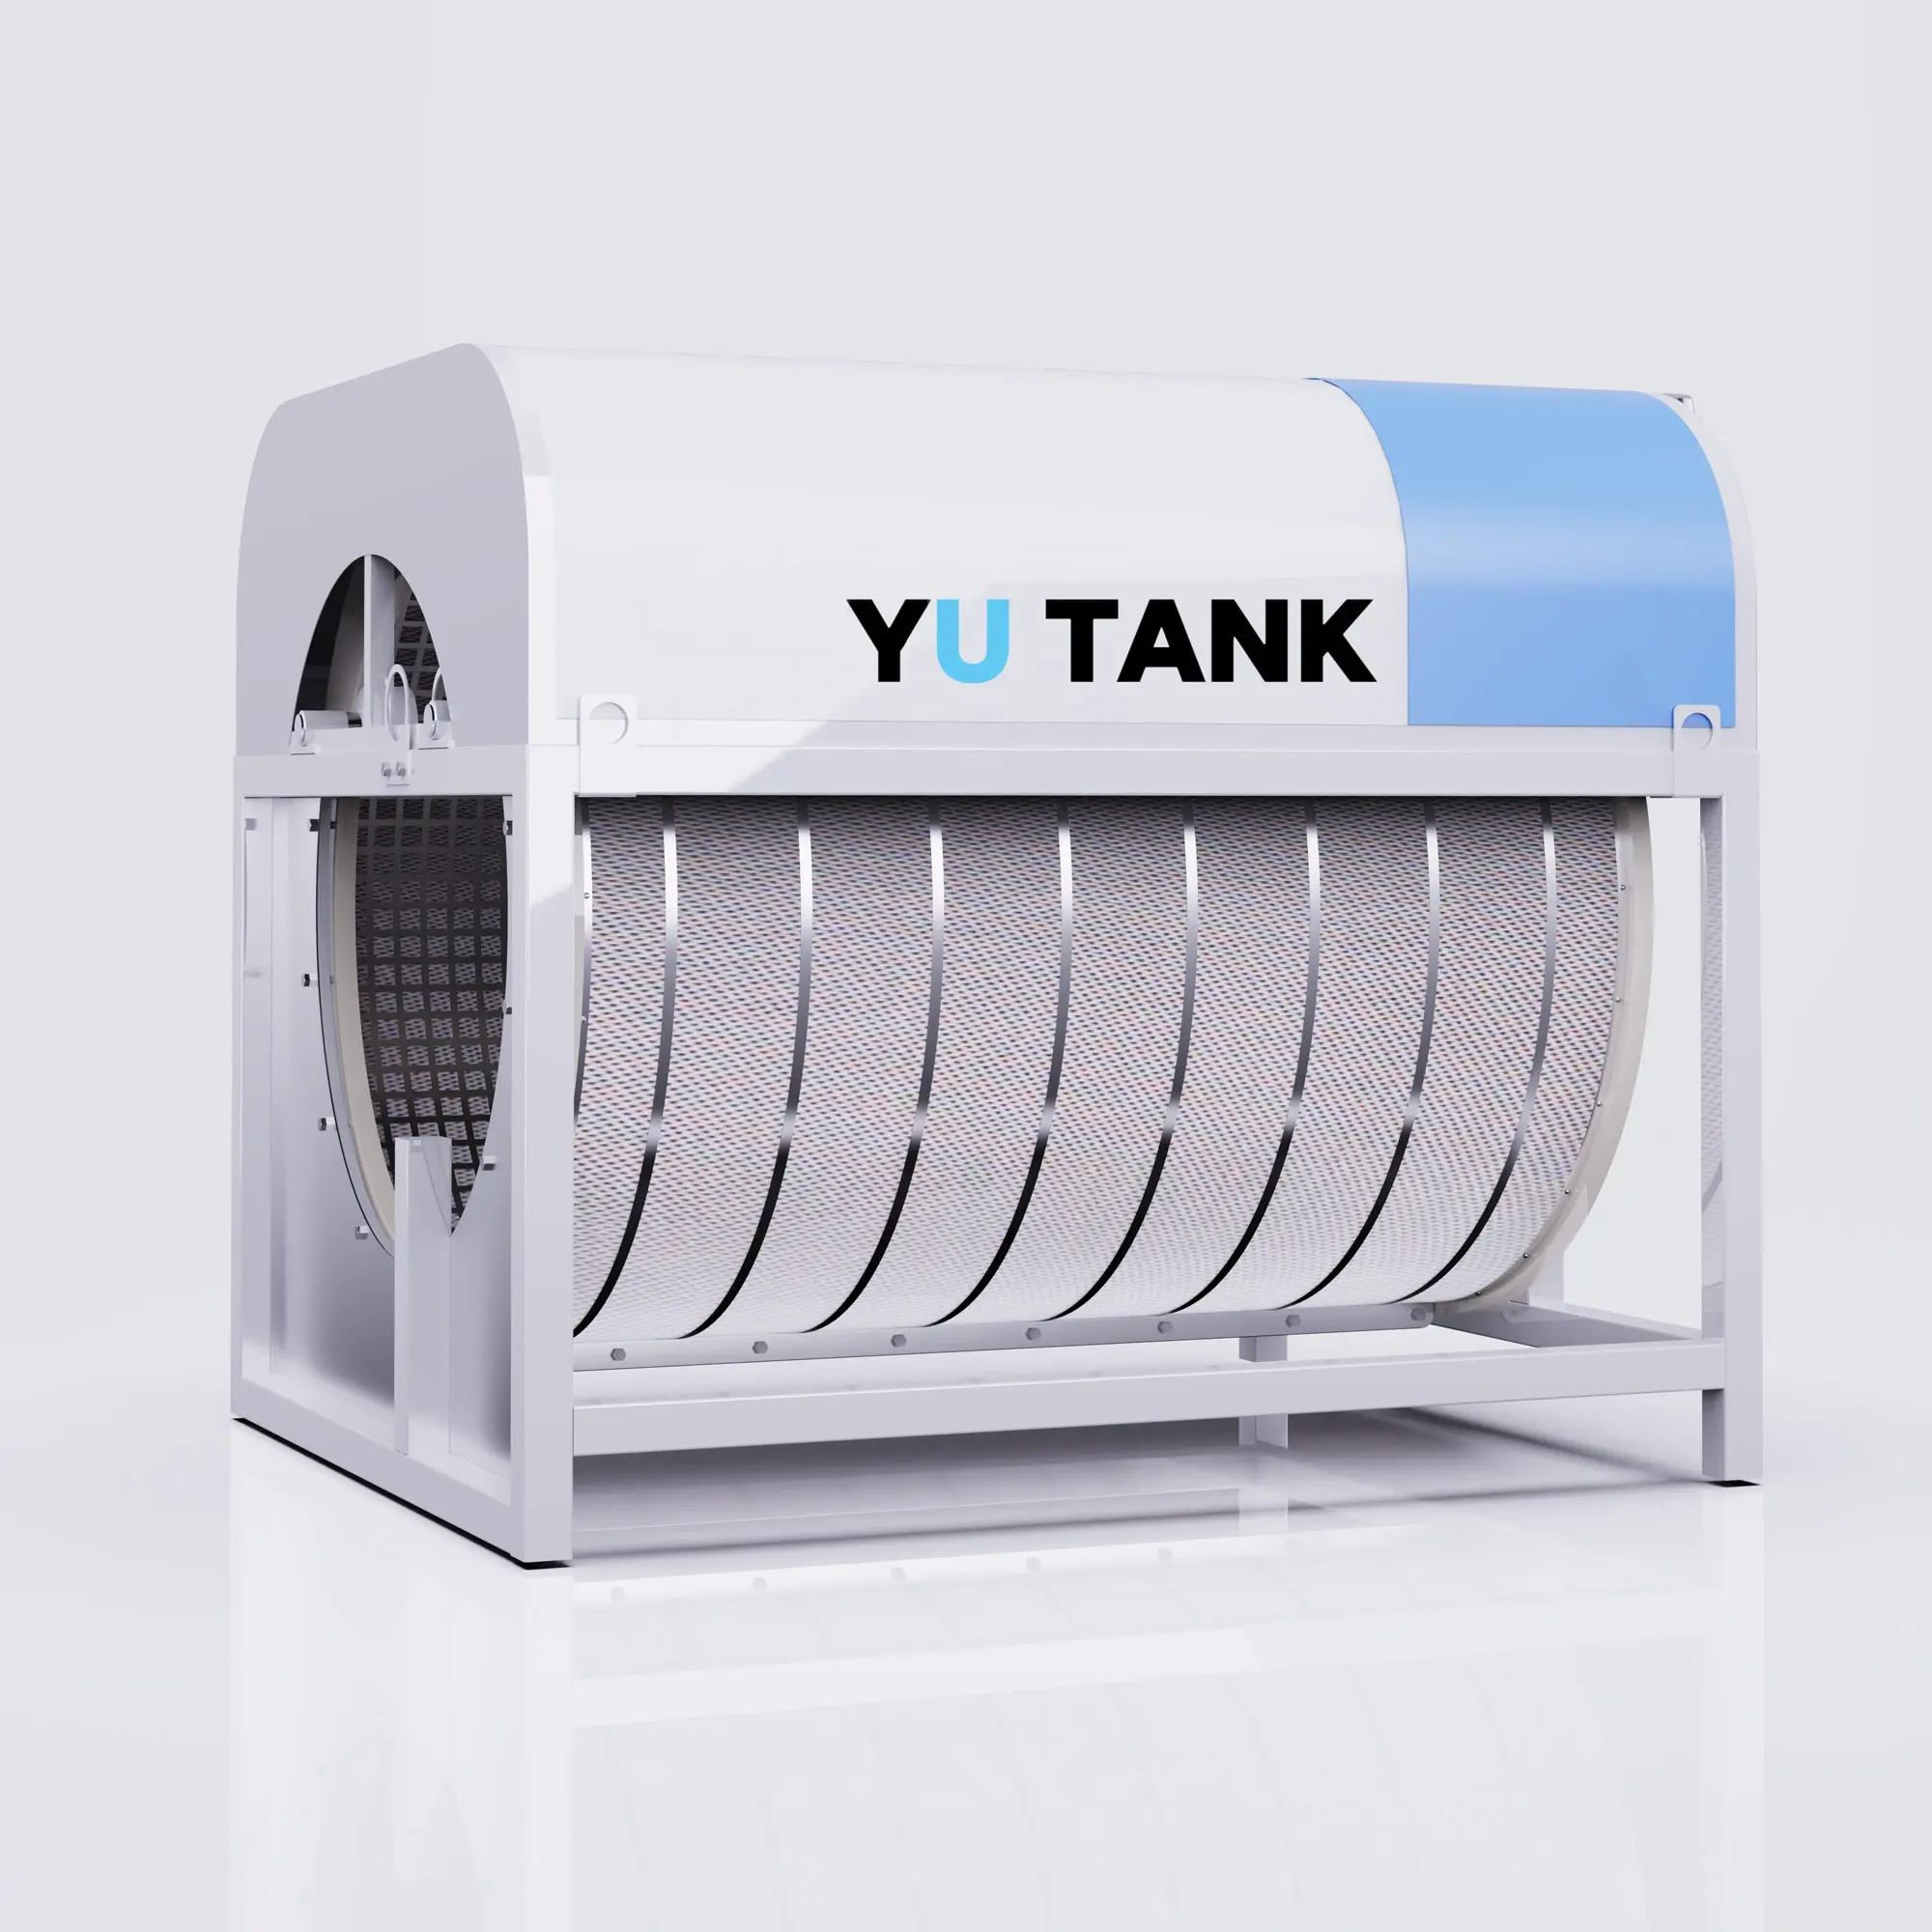 Вакуумный роторный Барабанный Фильтр Yu Tank для аквакультуры, рыбоводства, система фильтрации Ras